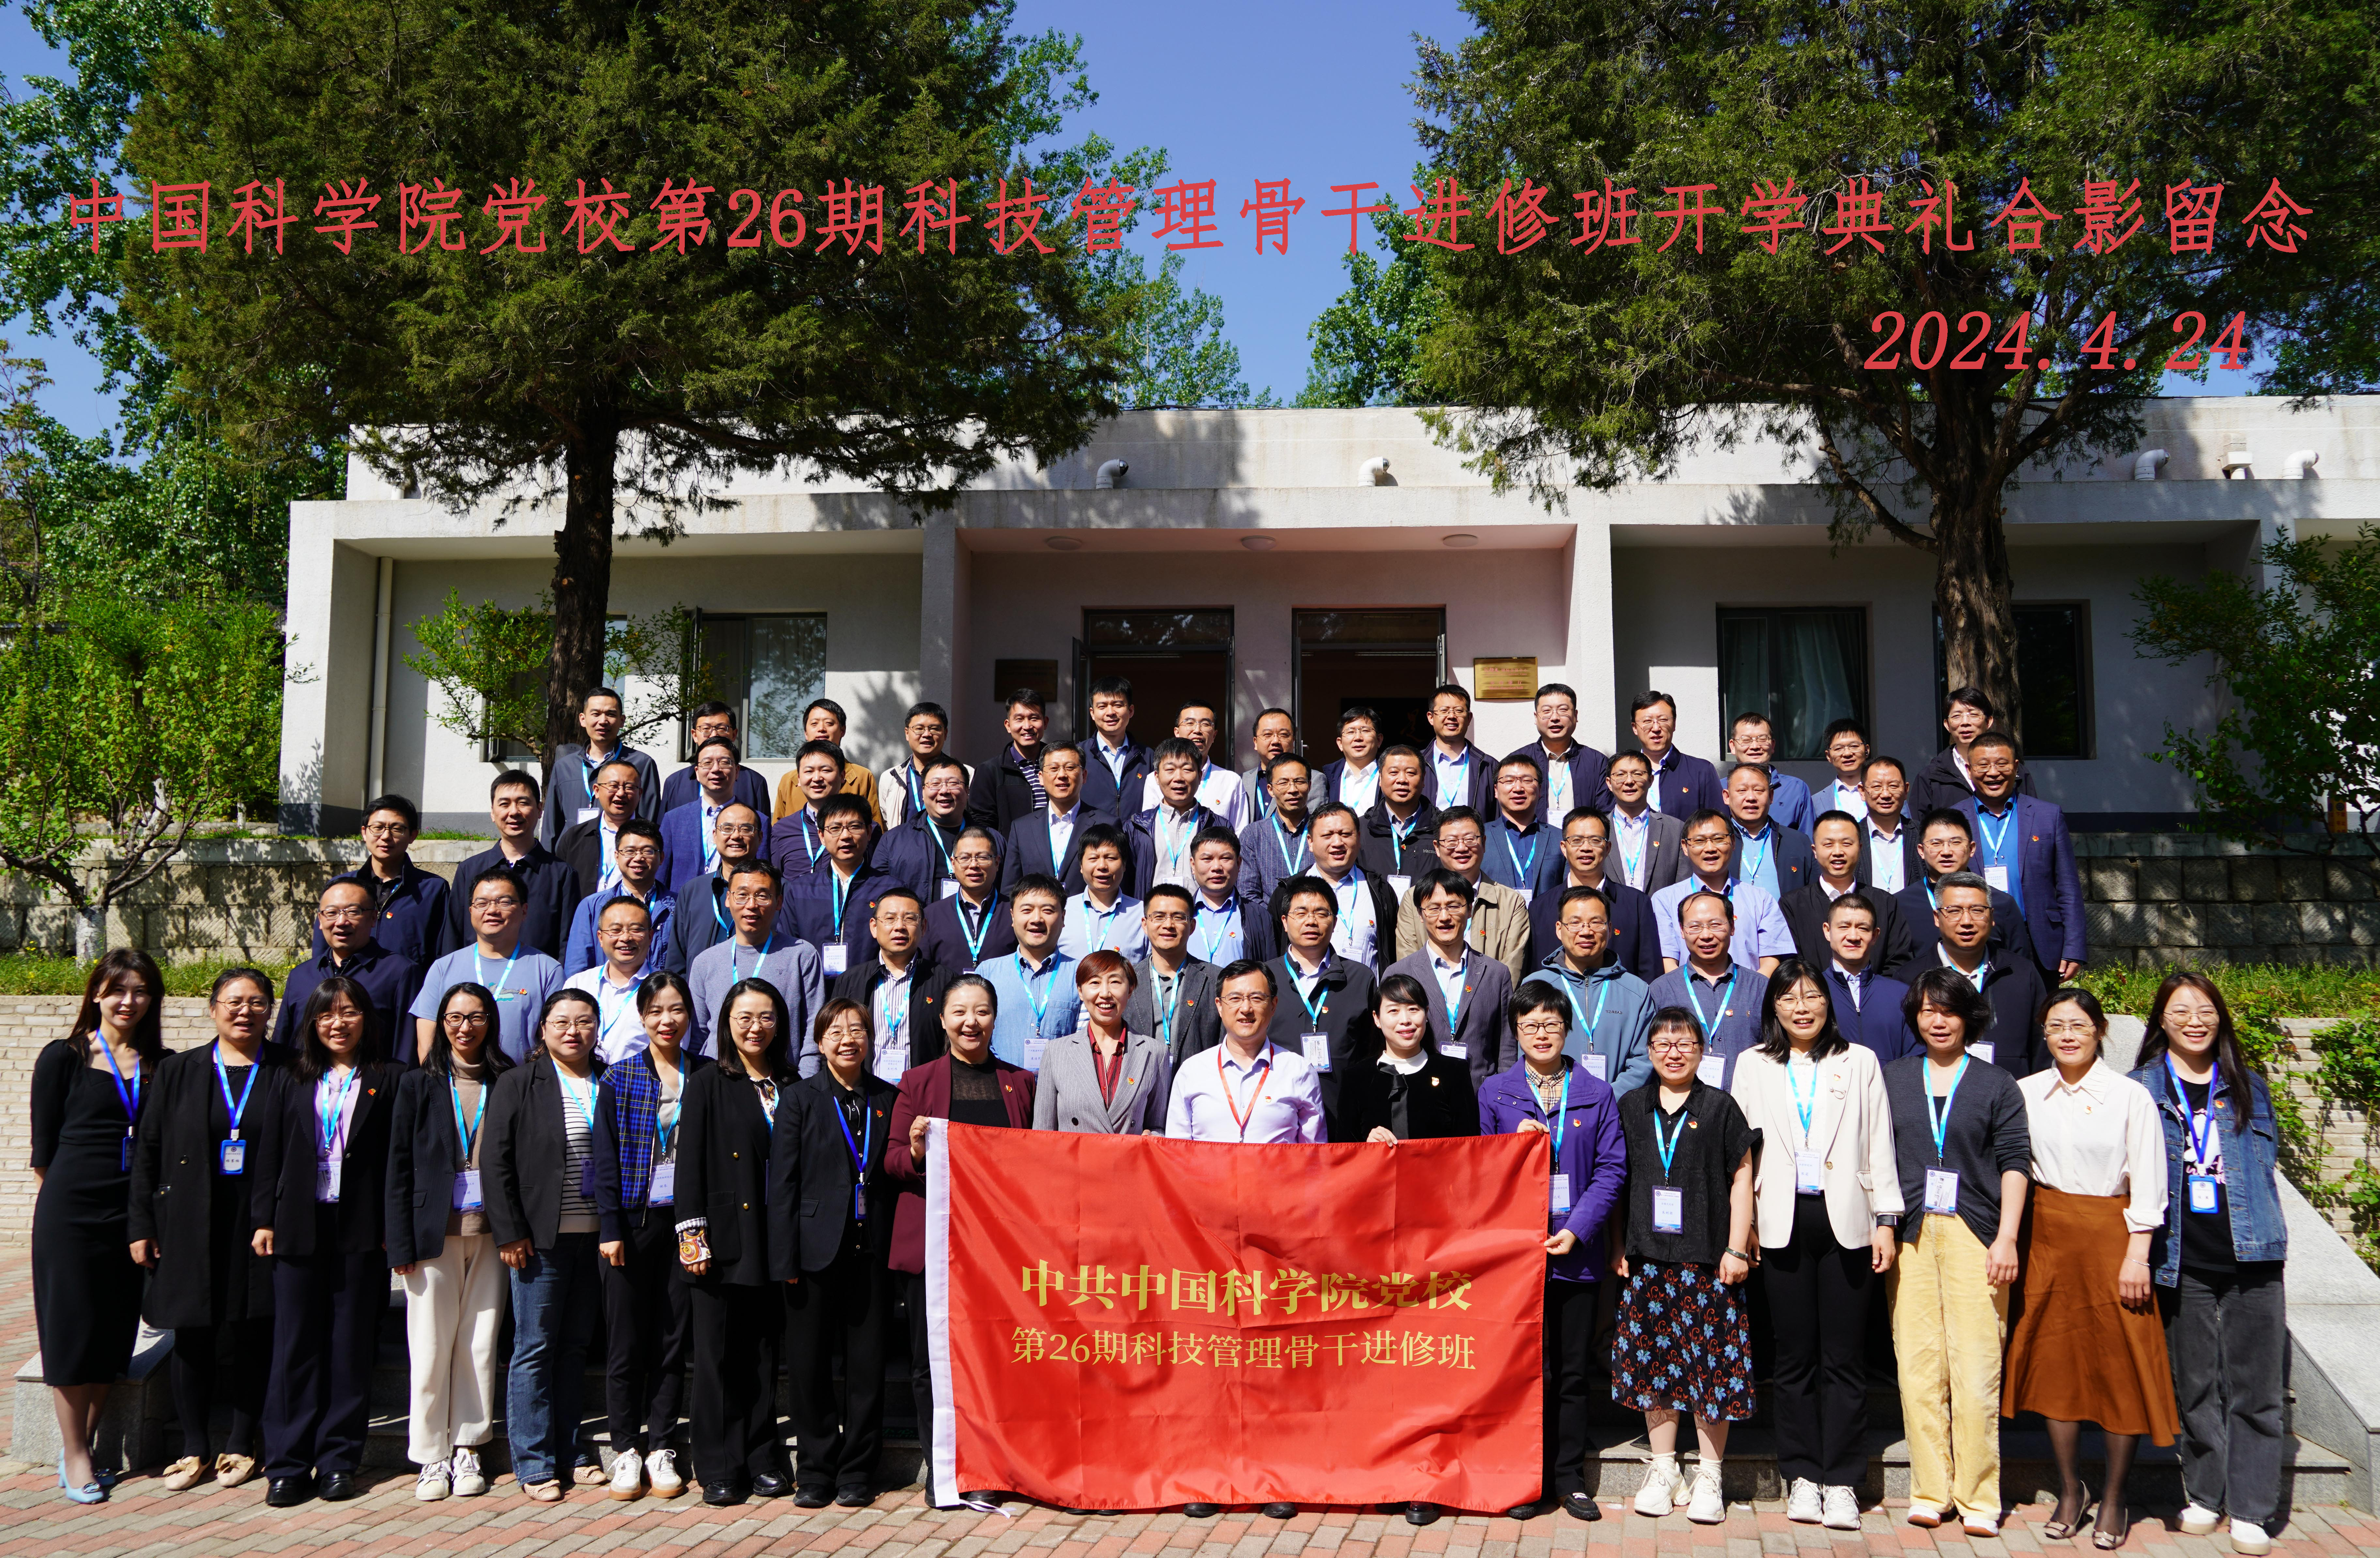 中国科学院党校第26期科技管理骨干进修班部分学员感言